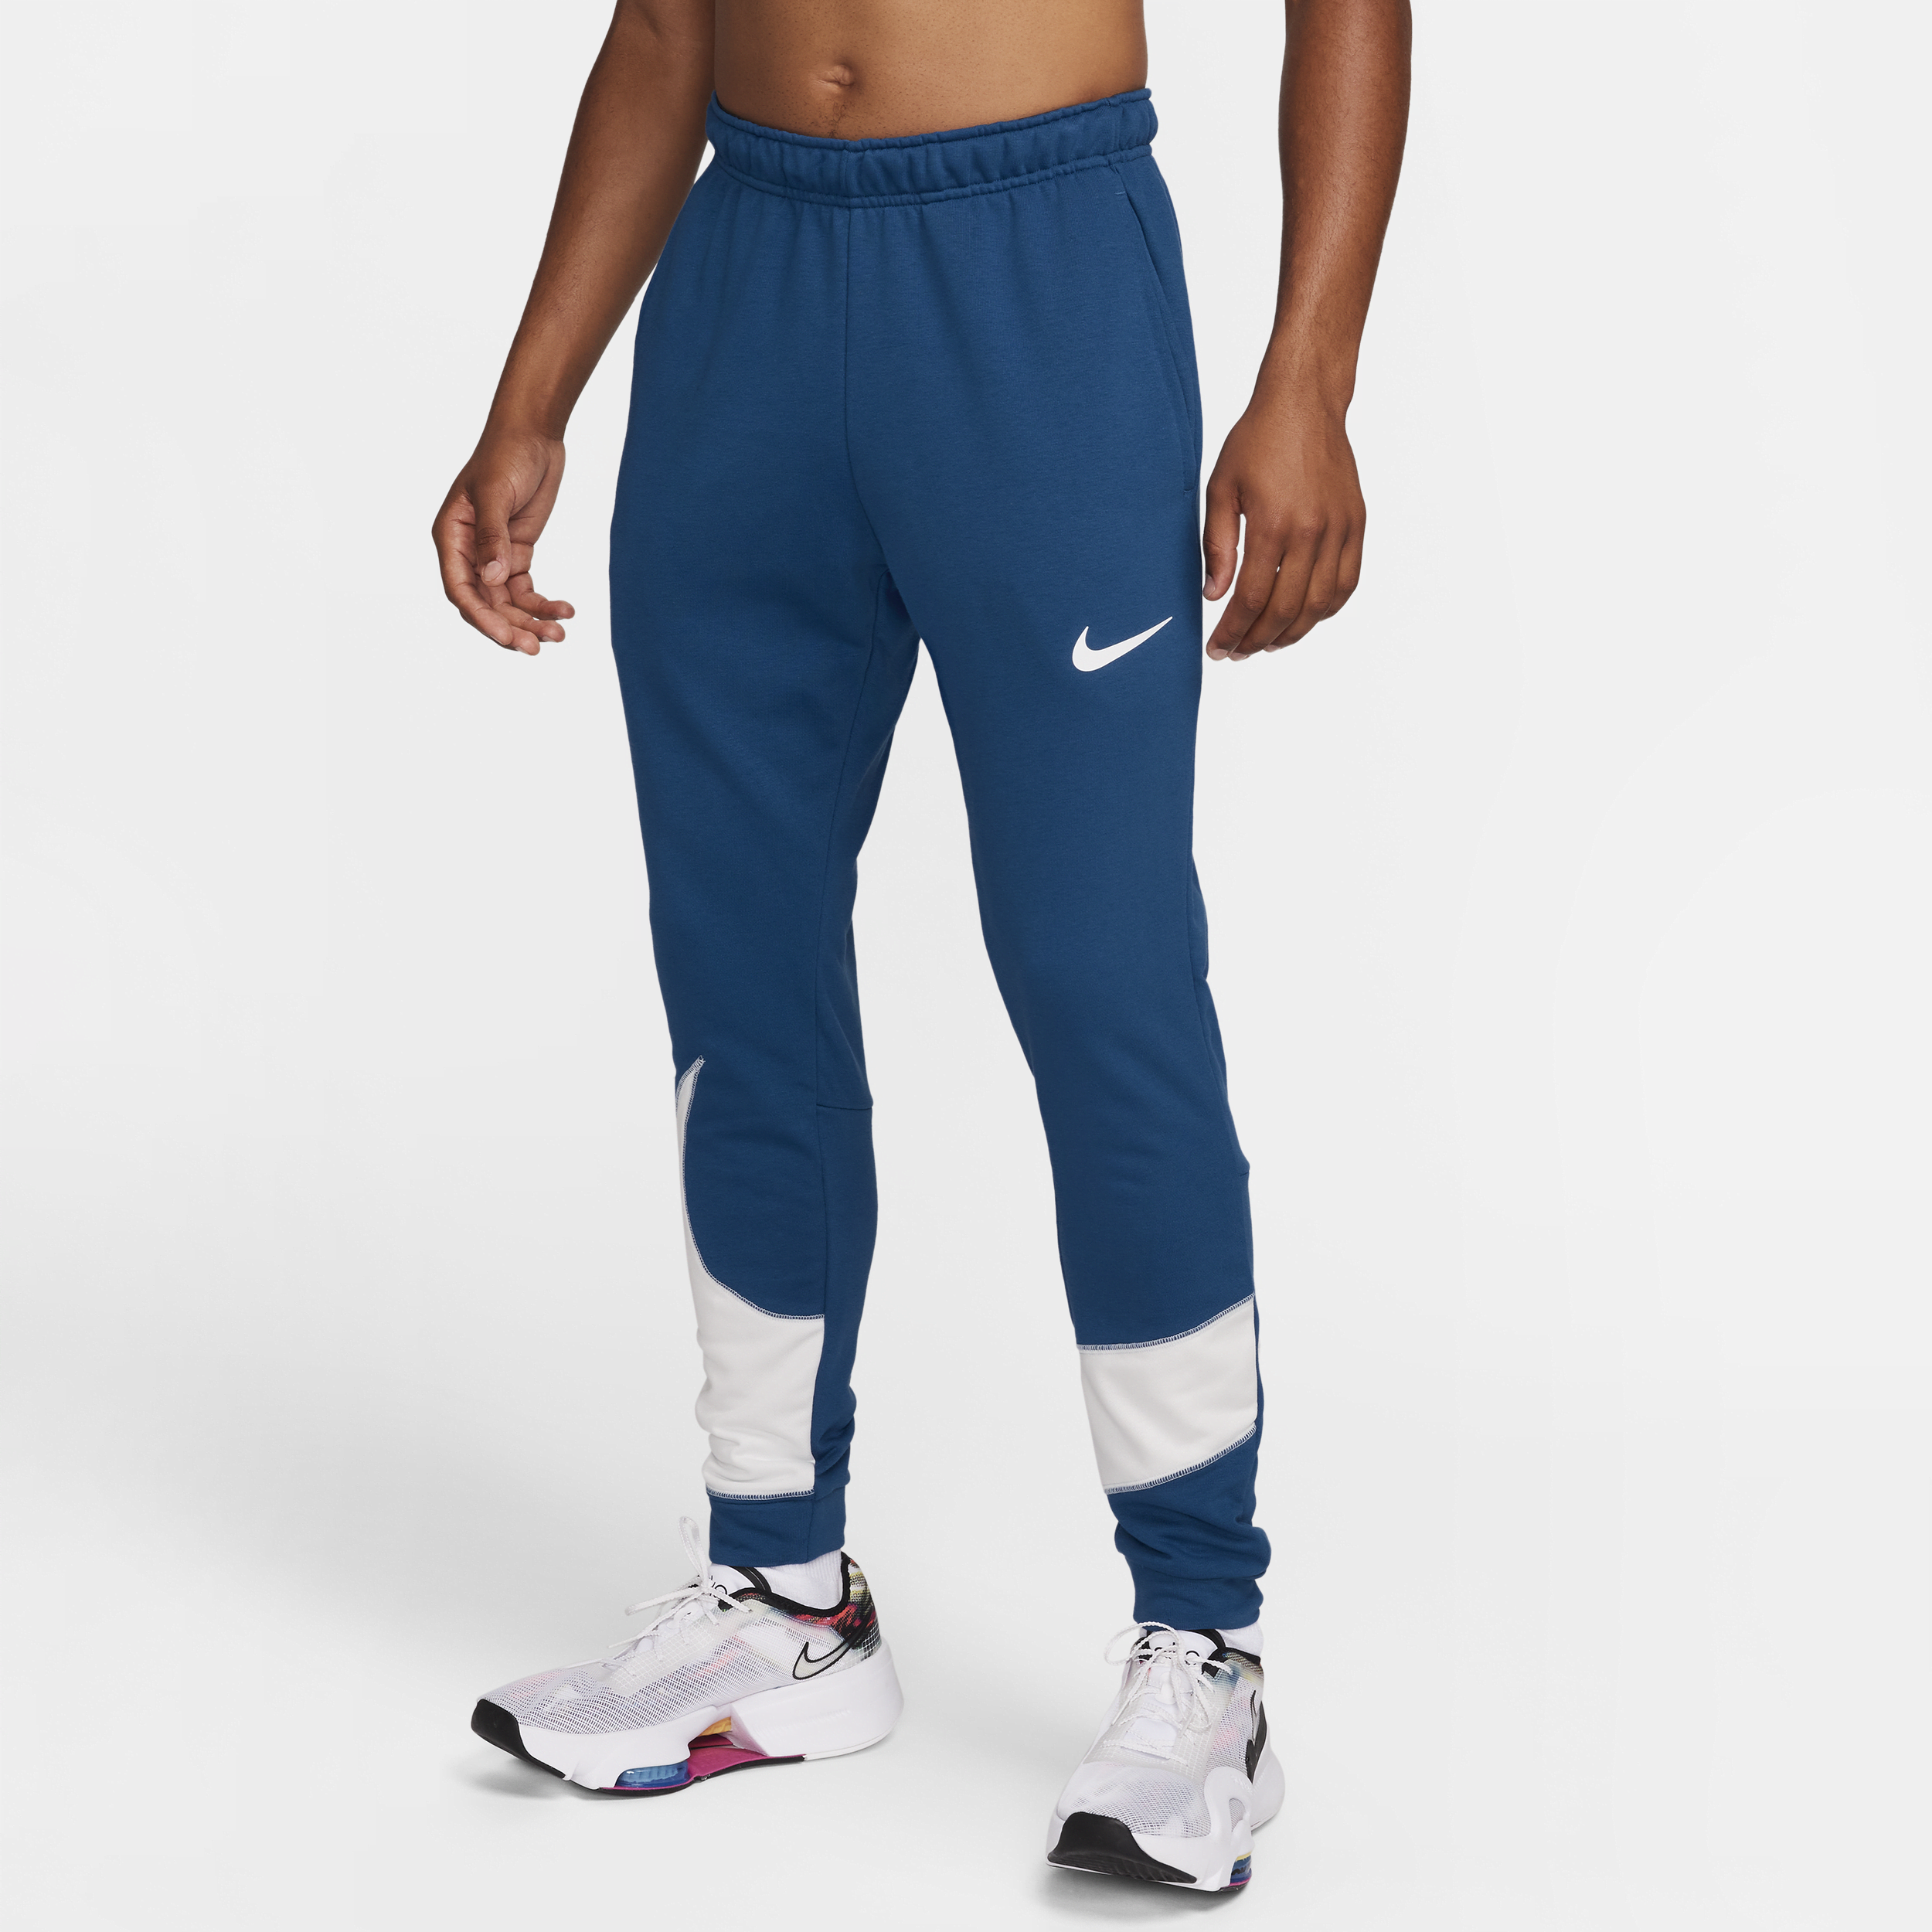 Nike Dri-FIT fitnessbroek met taps toelopend design voor heren - Blauw